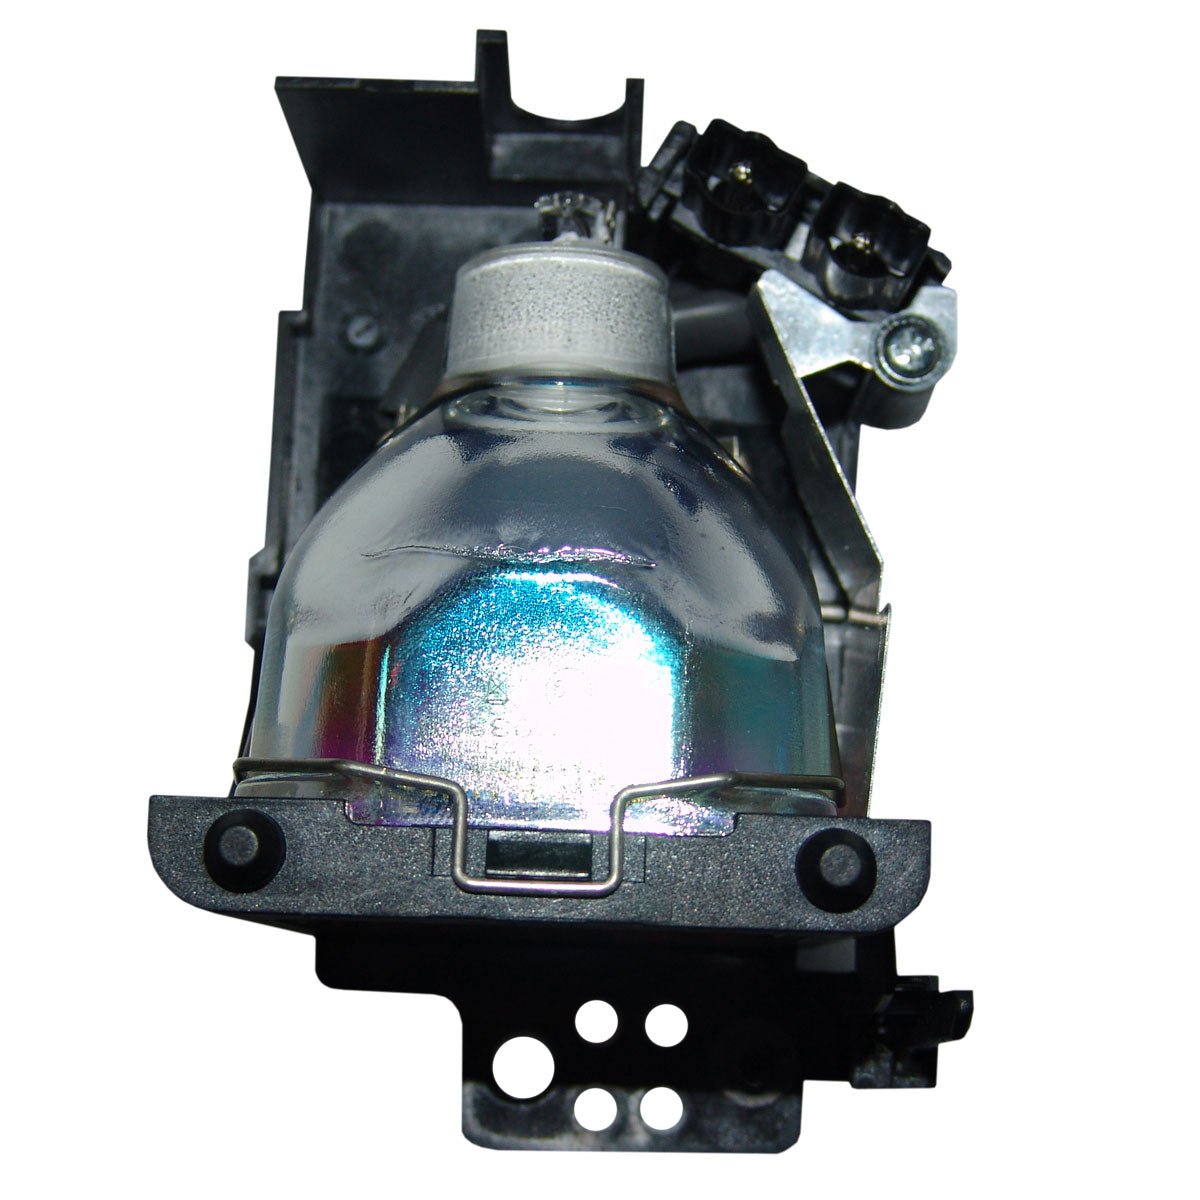 Dukane 456-234 Osram Projector Lamp Module